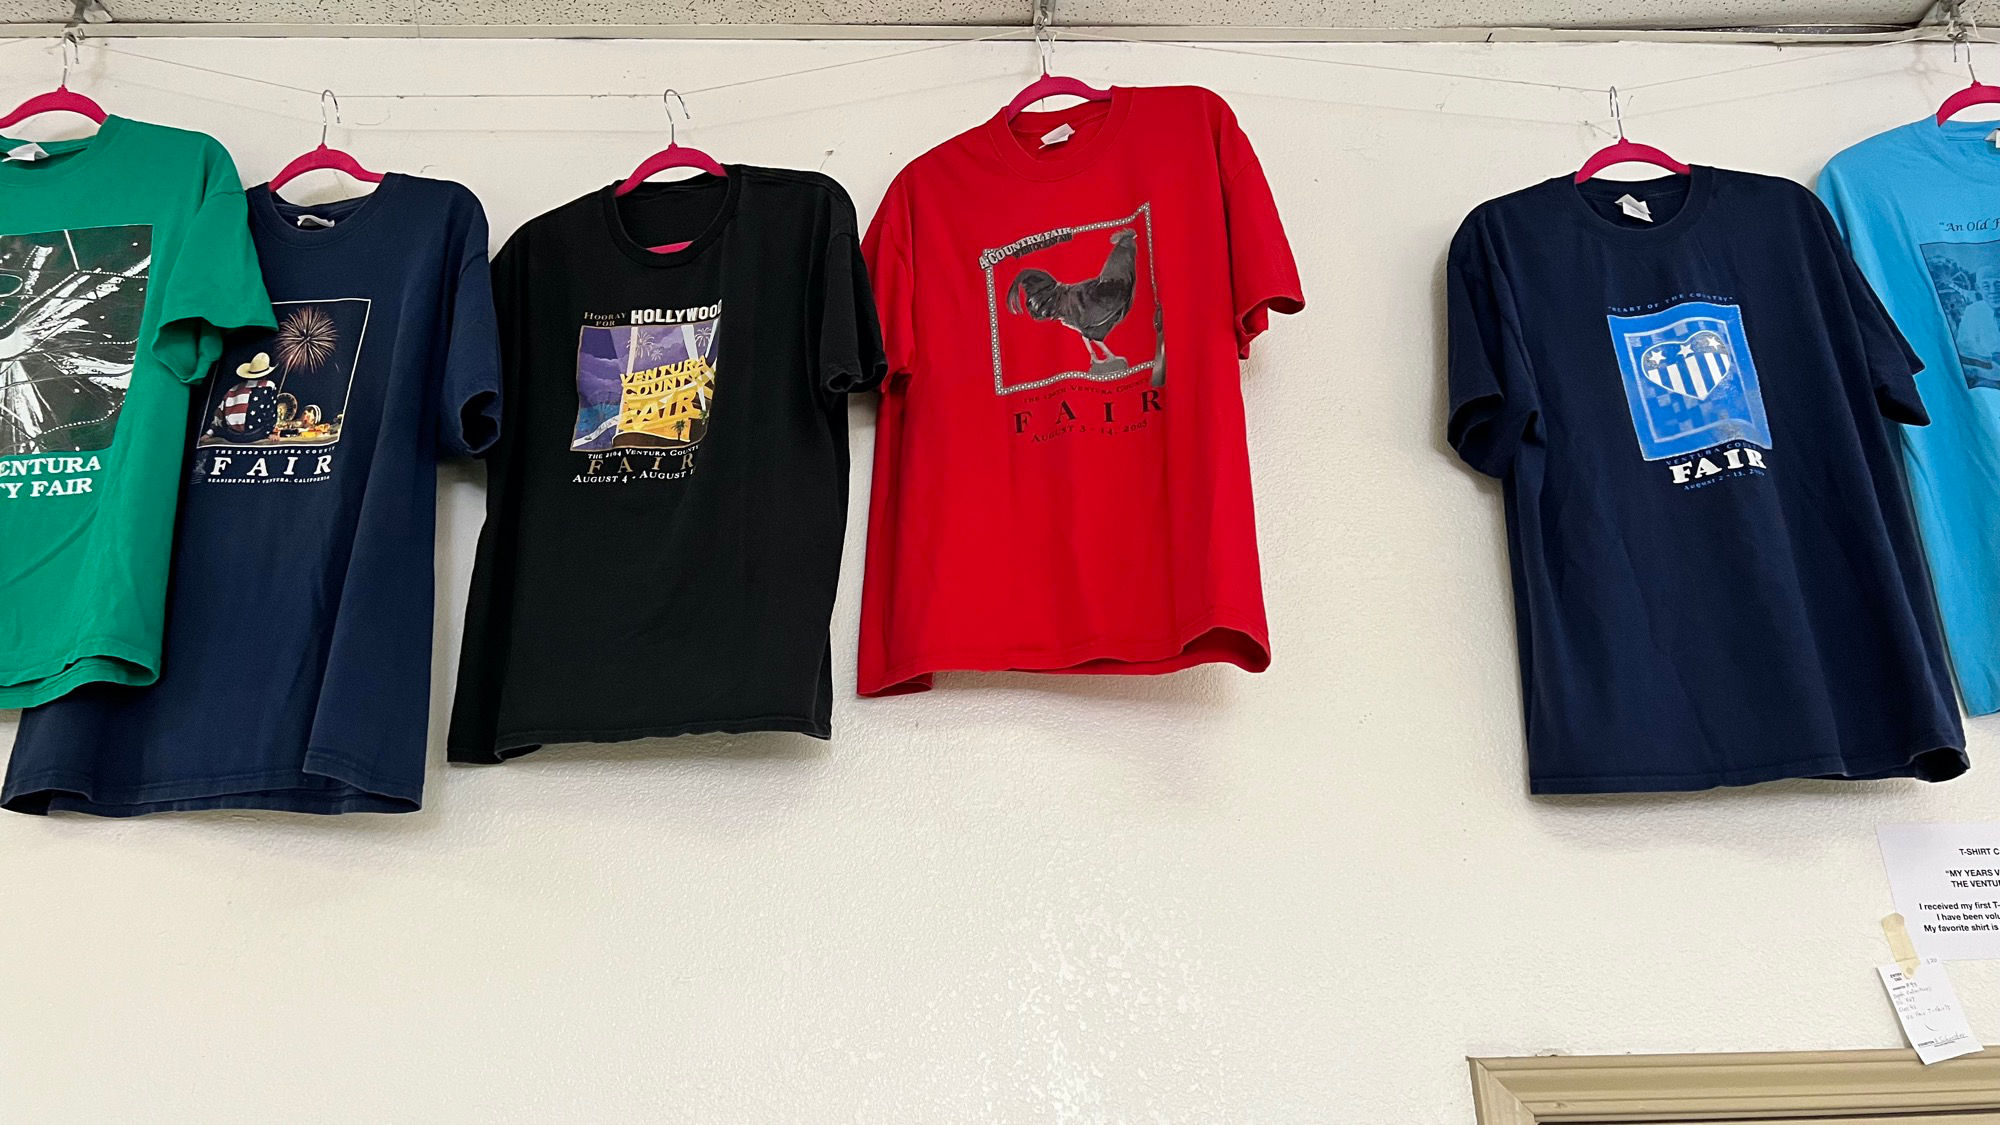 Ventura County Fair T-Shirts 2003 - 2006